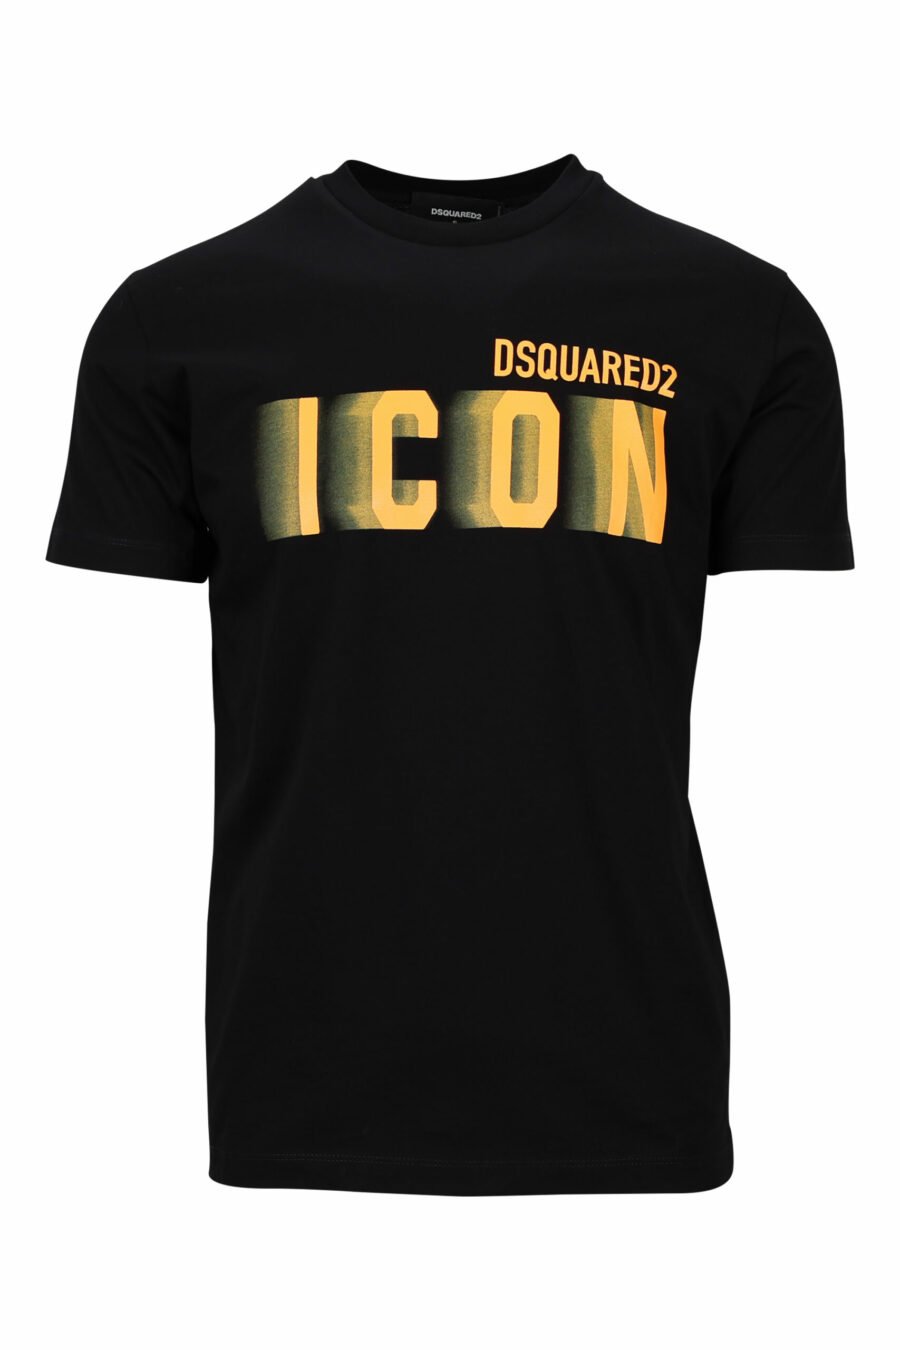 Schwarzes T-Shirt mit neonorangem, verschwommenem "Icon"-Maxilogo - 8054148359195 skaliert